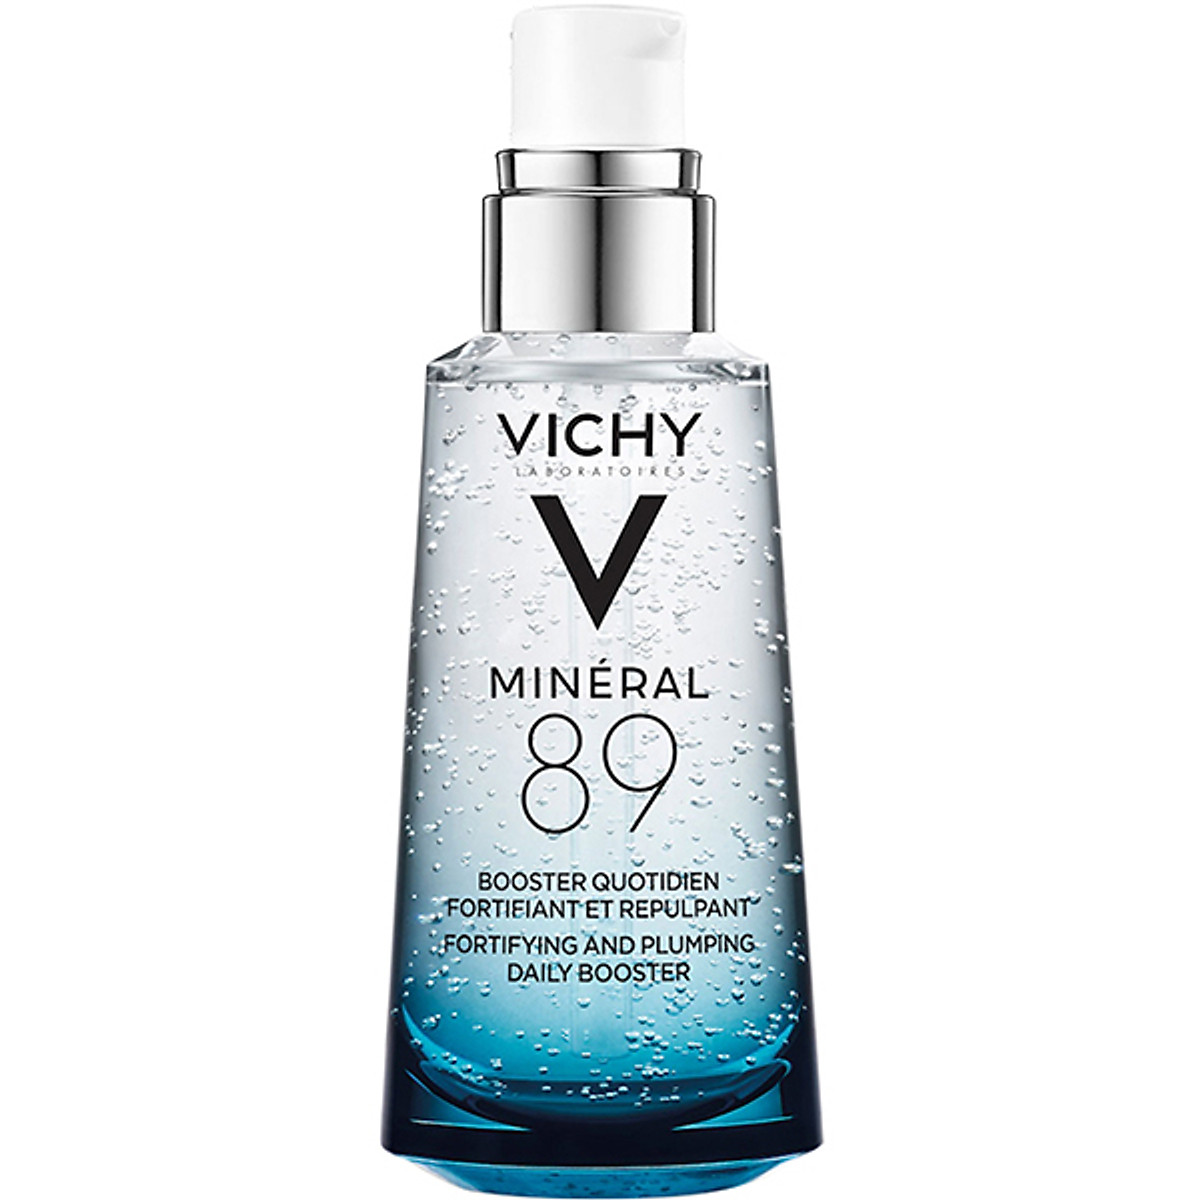 Serum Vichy Mineral 89 cấp nước dưỡng ẩm